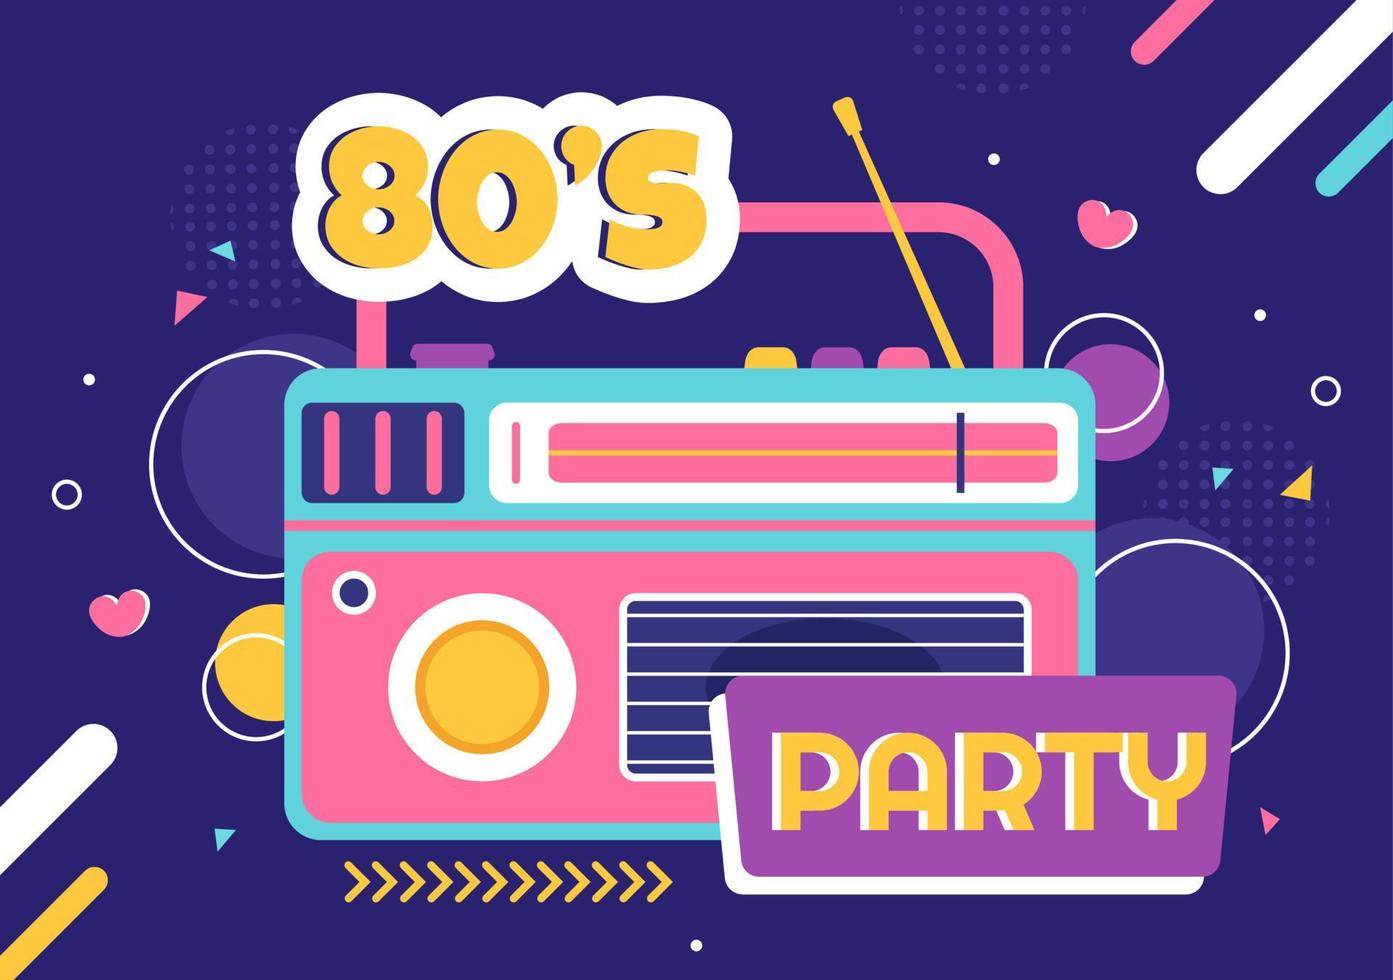 Ilustração de fundo de desenhos animados de festa dos anos 80 com música retrô, toca-fitas de rádio de 1980 e discoteca em design de estilo antigo vetor